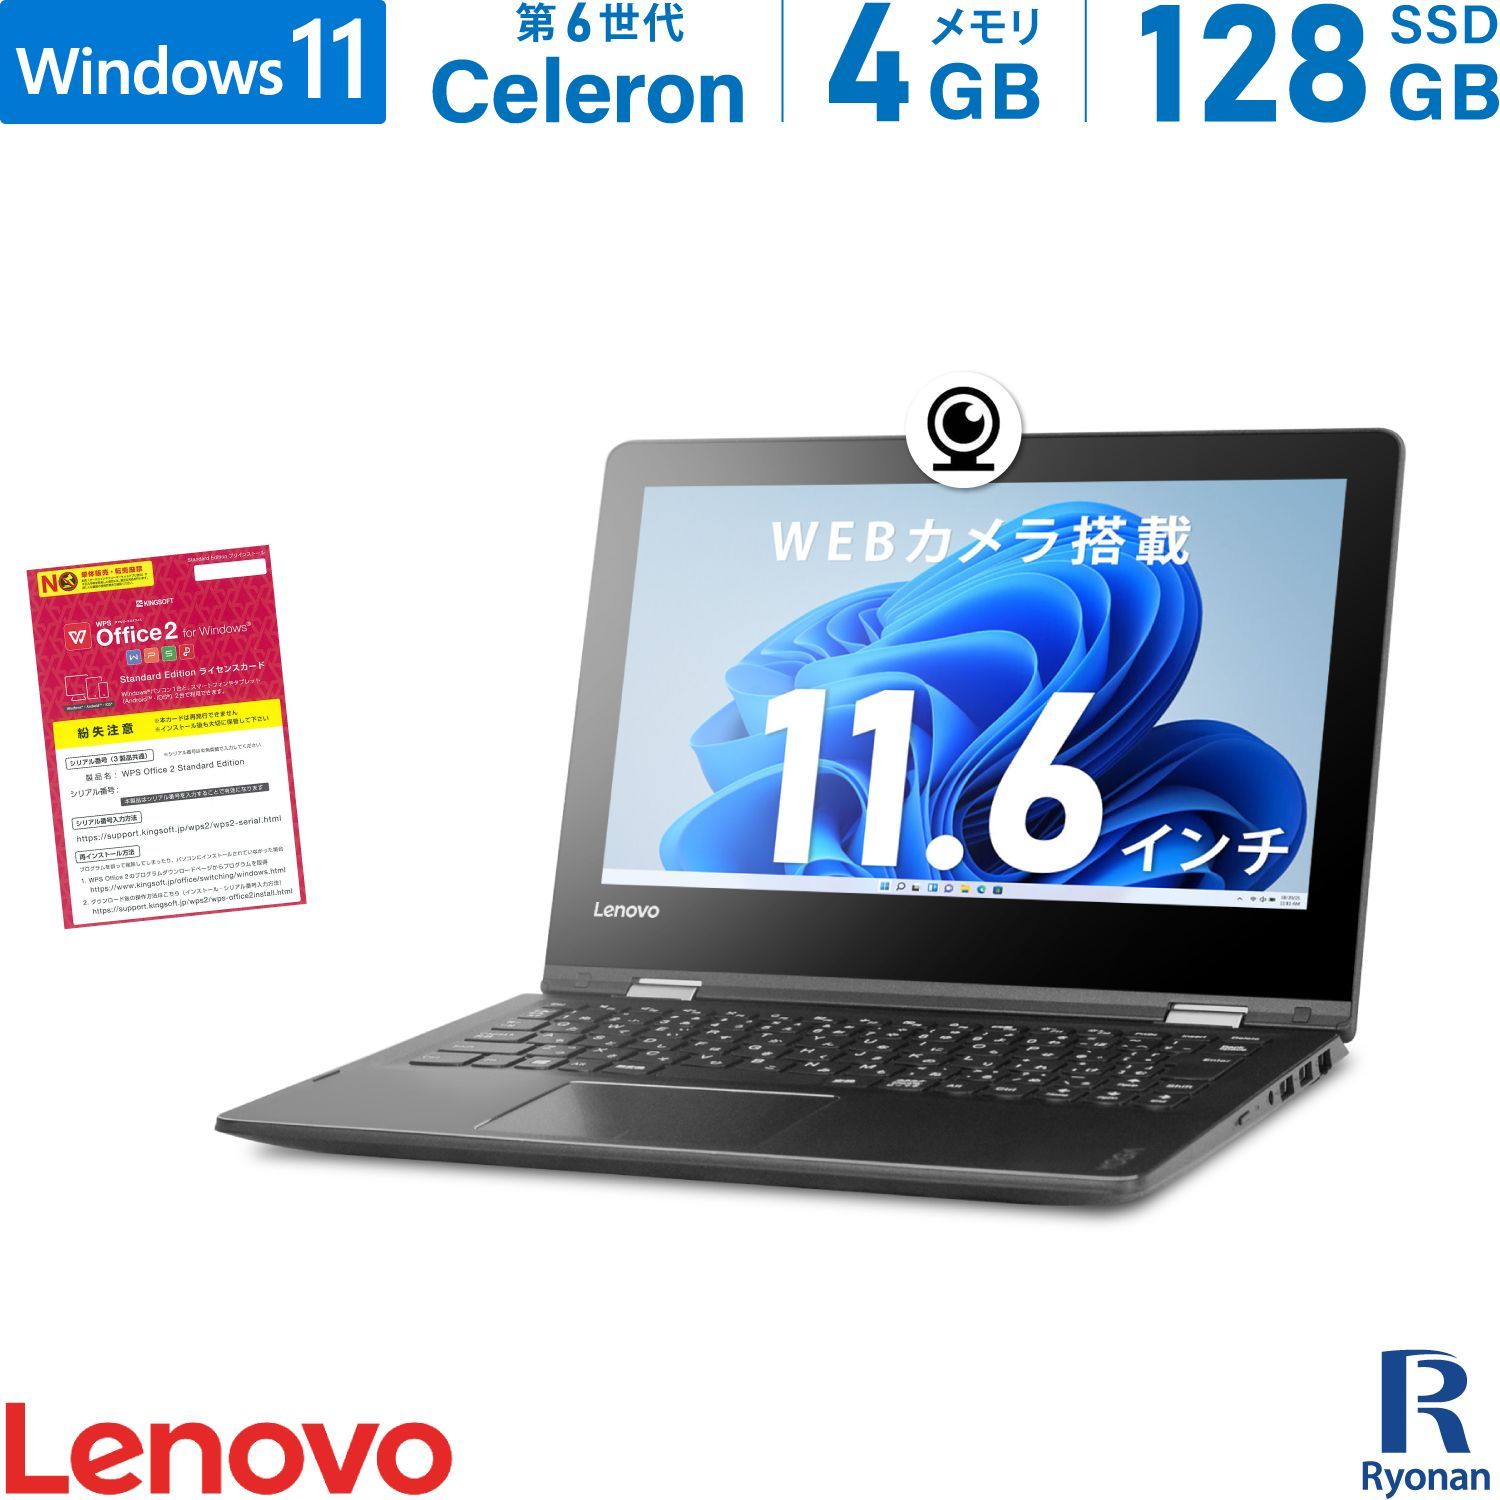 【WEBカメラ / Office 搭載】中古ノートパソコン Lenovo YOGA 310 第6世代 Celeron メモリ:4GB  新品SSD:128GB 11.6インチ 無線LAN タッチパネル 中古 パソコン ノートPC Windows 11